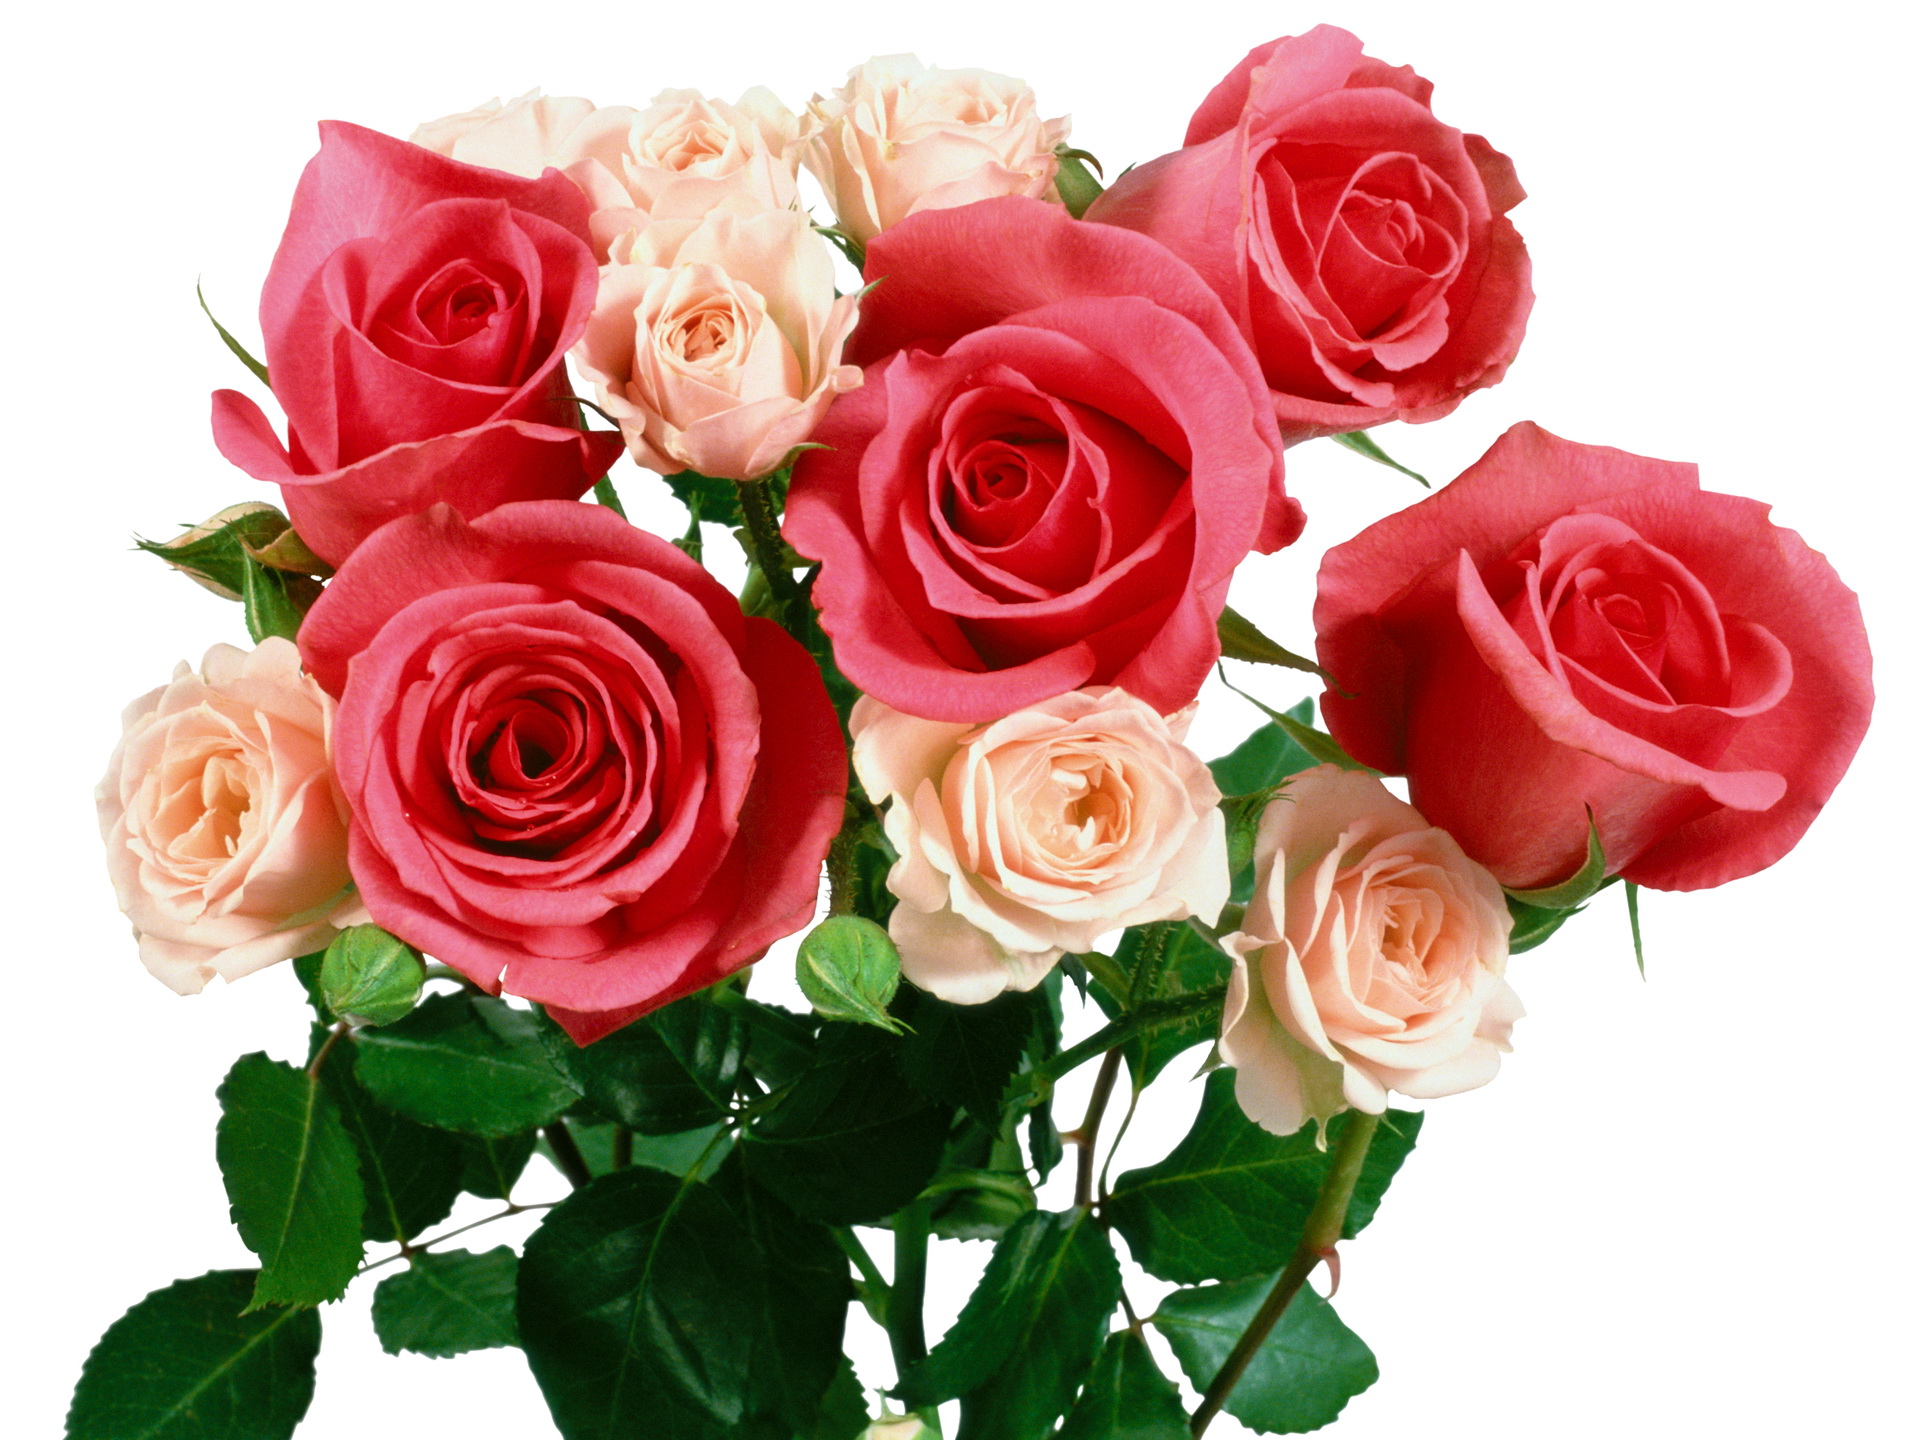 1415 роз. Букет роз. Красивые розы. Красивый букет роз. Шикарный букет цветов на прозрачном фоне.